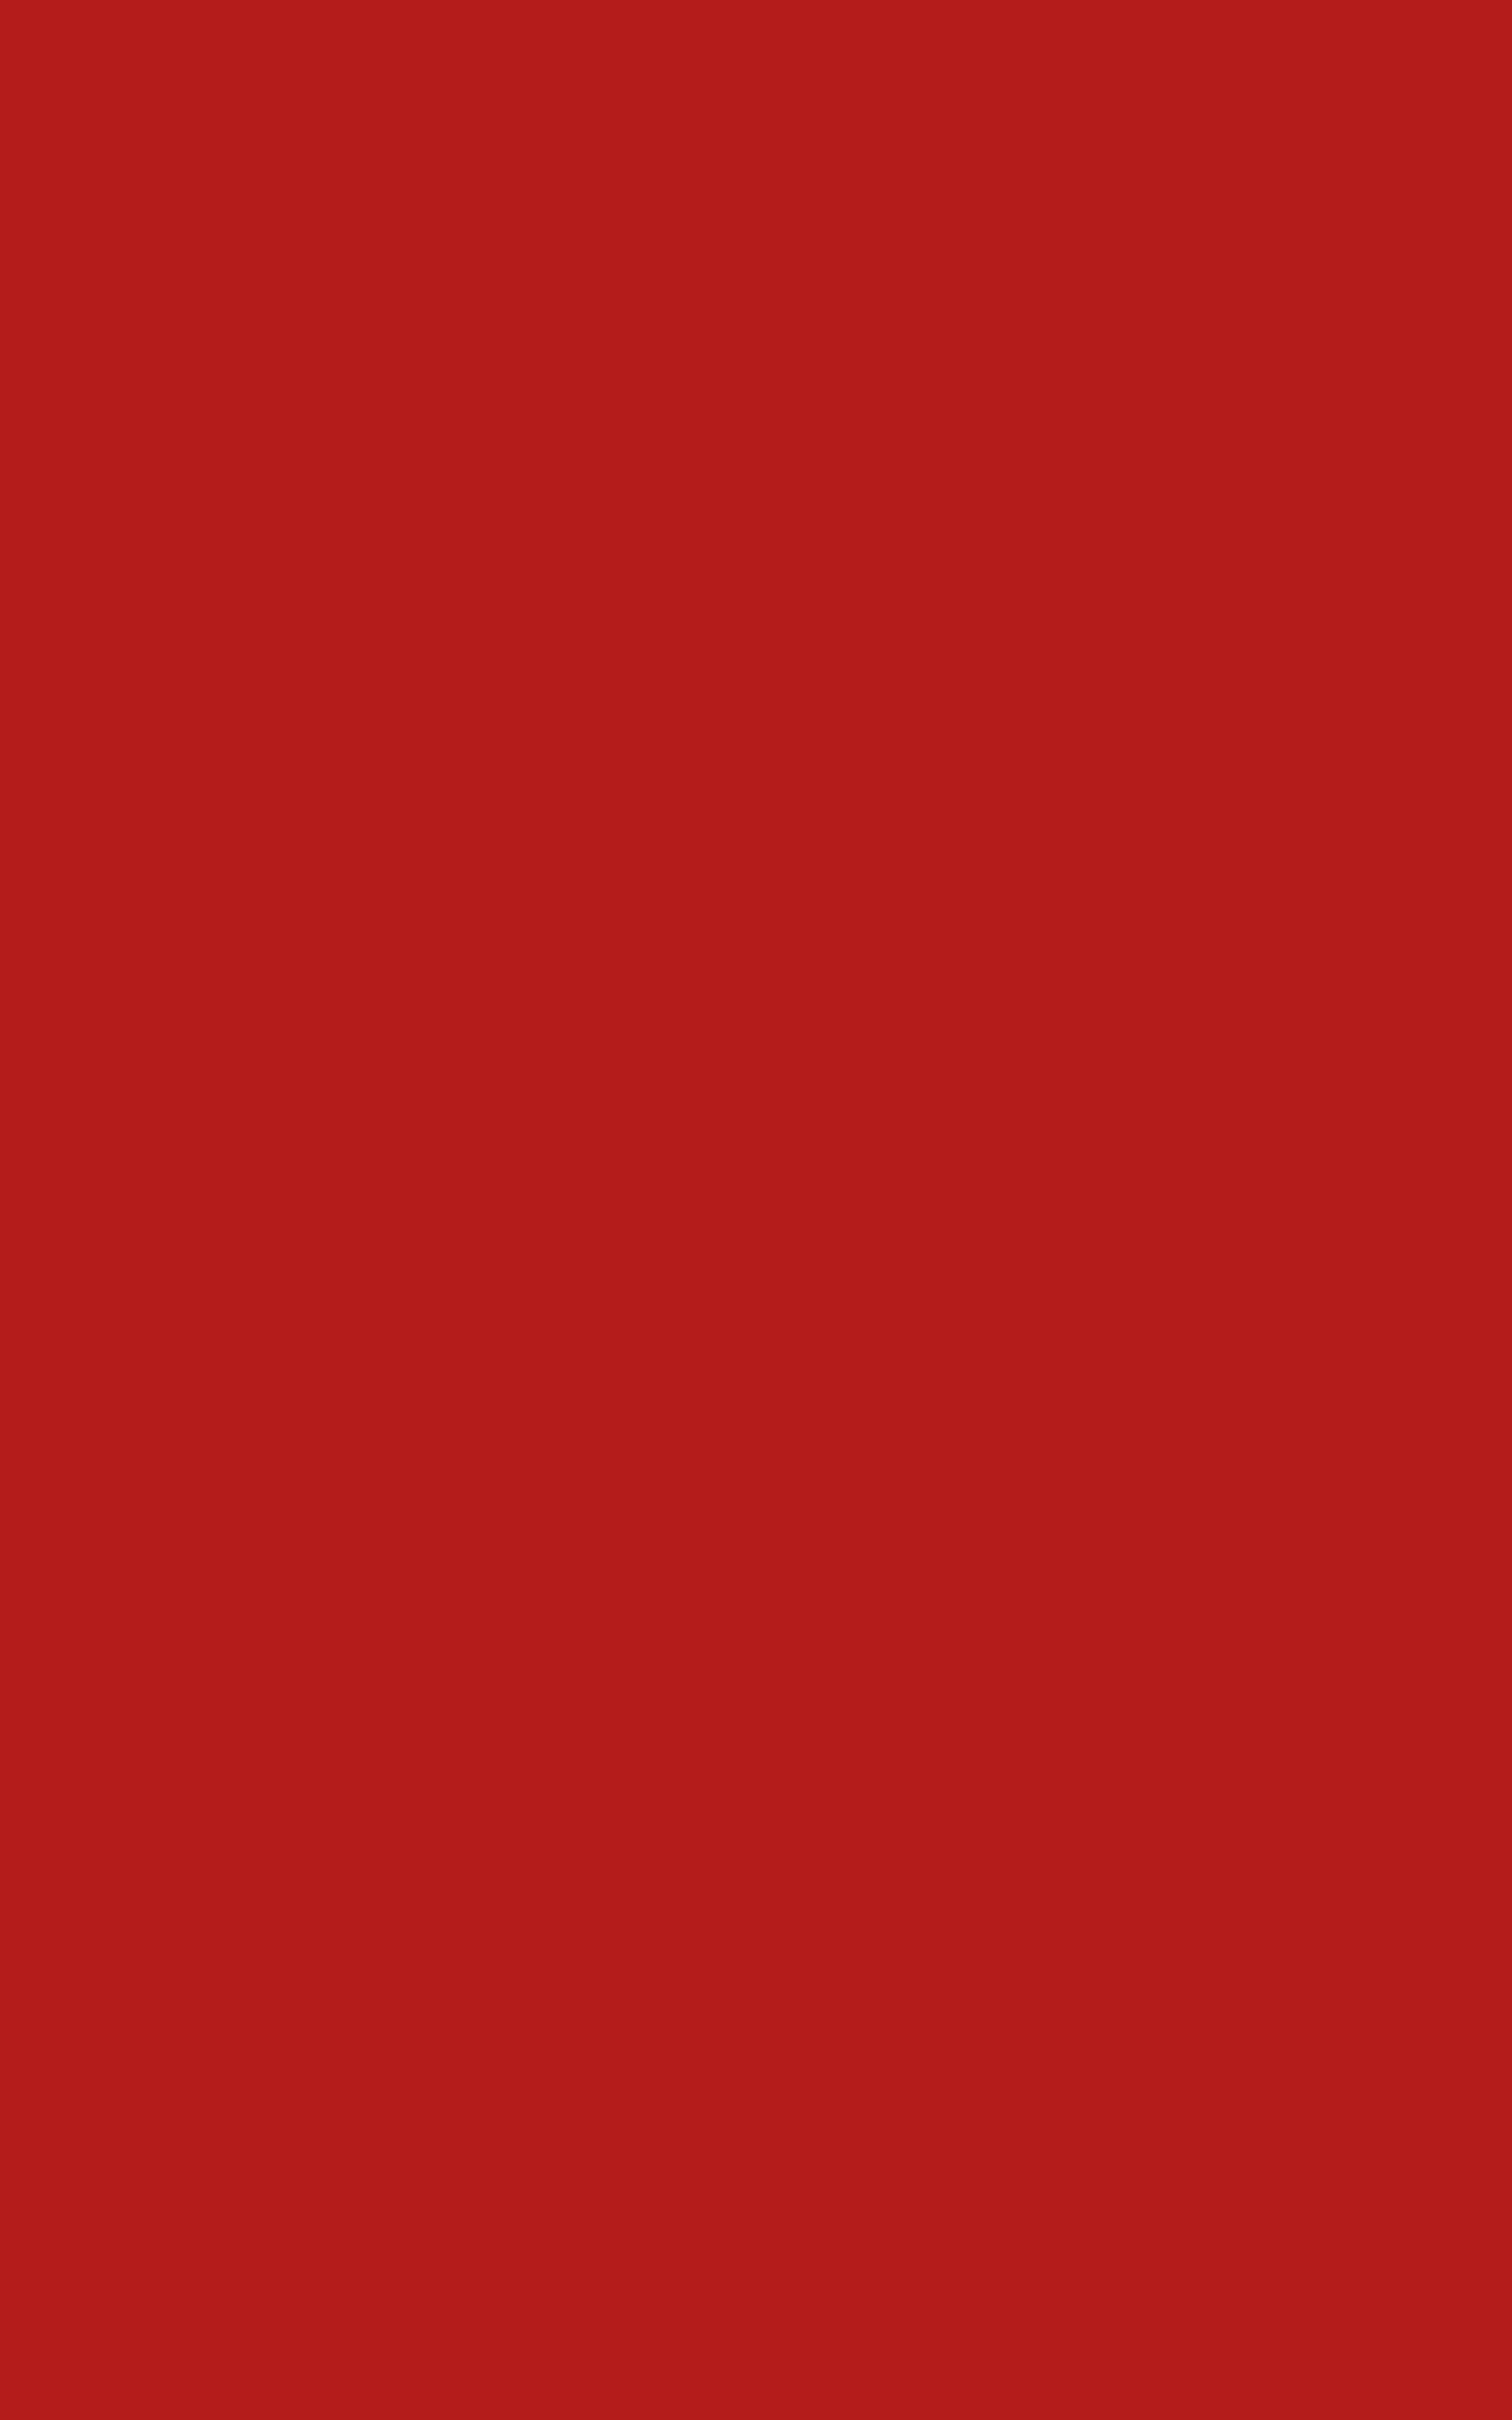 Enenfärgad Röd Bakgrund I Storleken 1600 X 2560